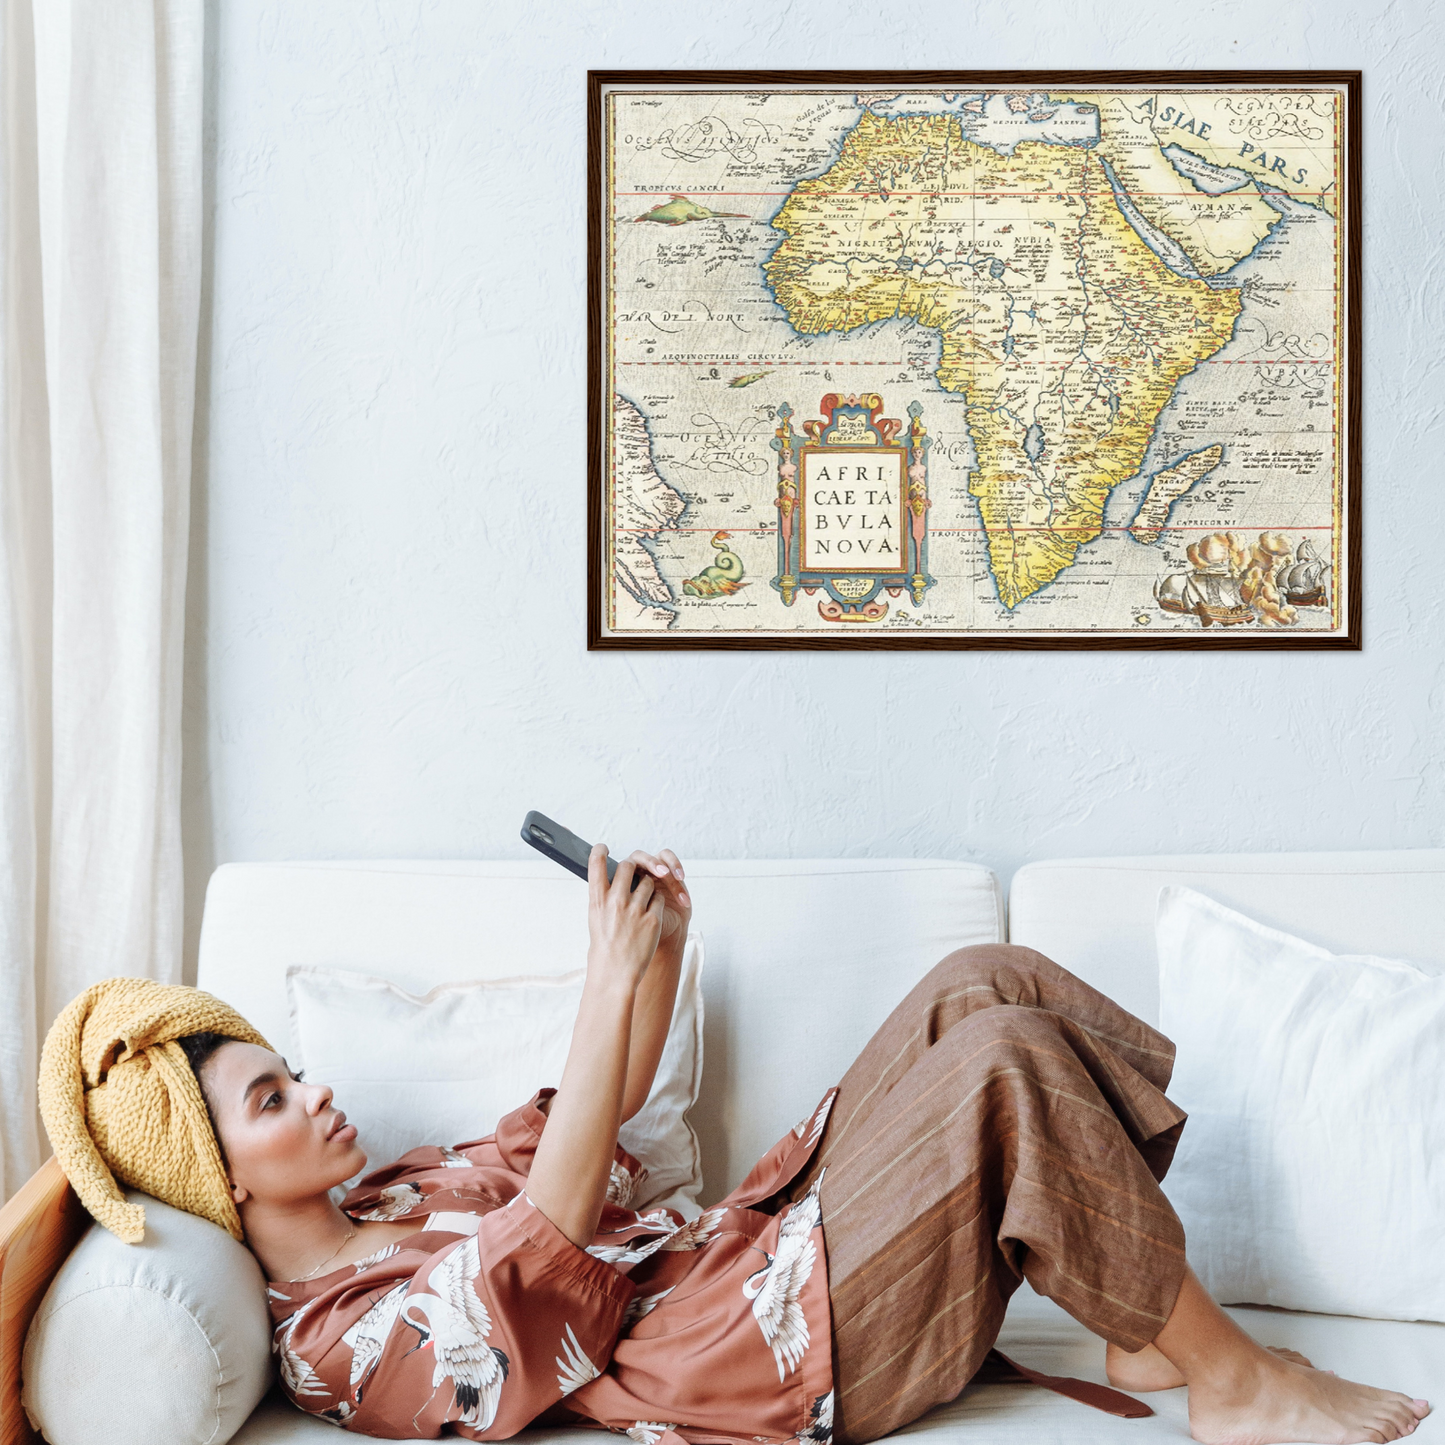 Historische Landkarte Afrika um 1570